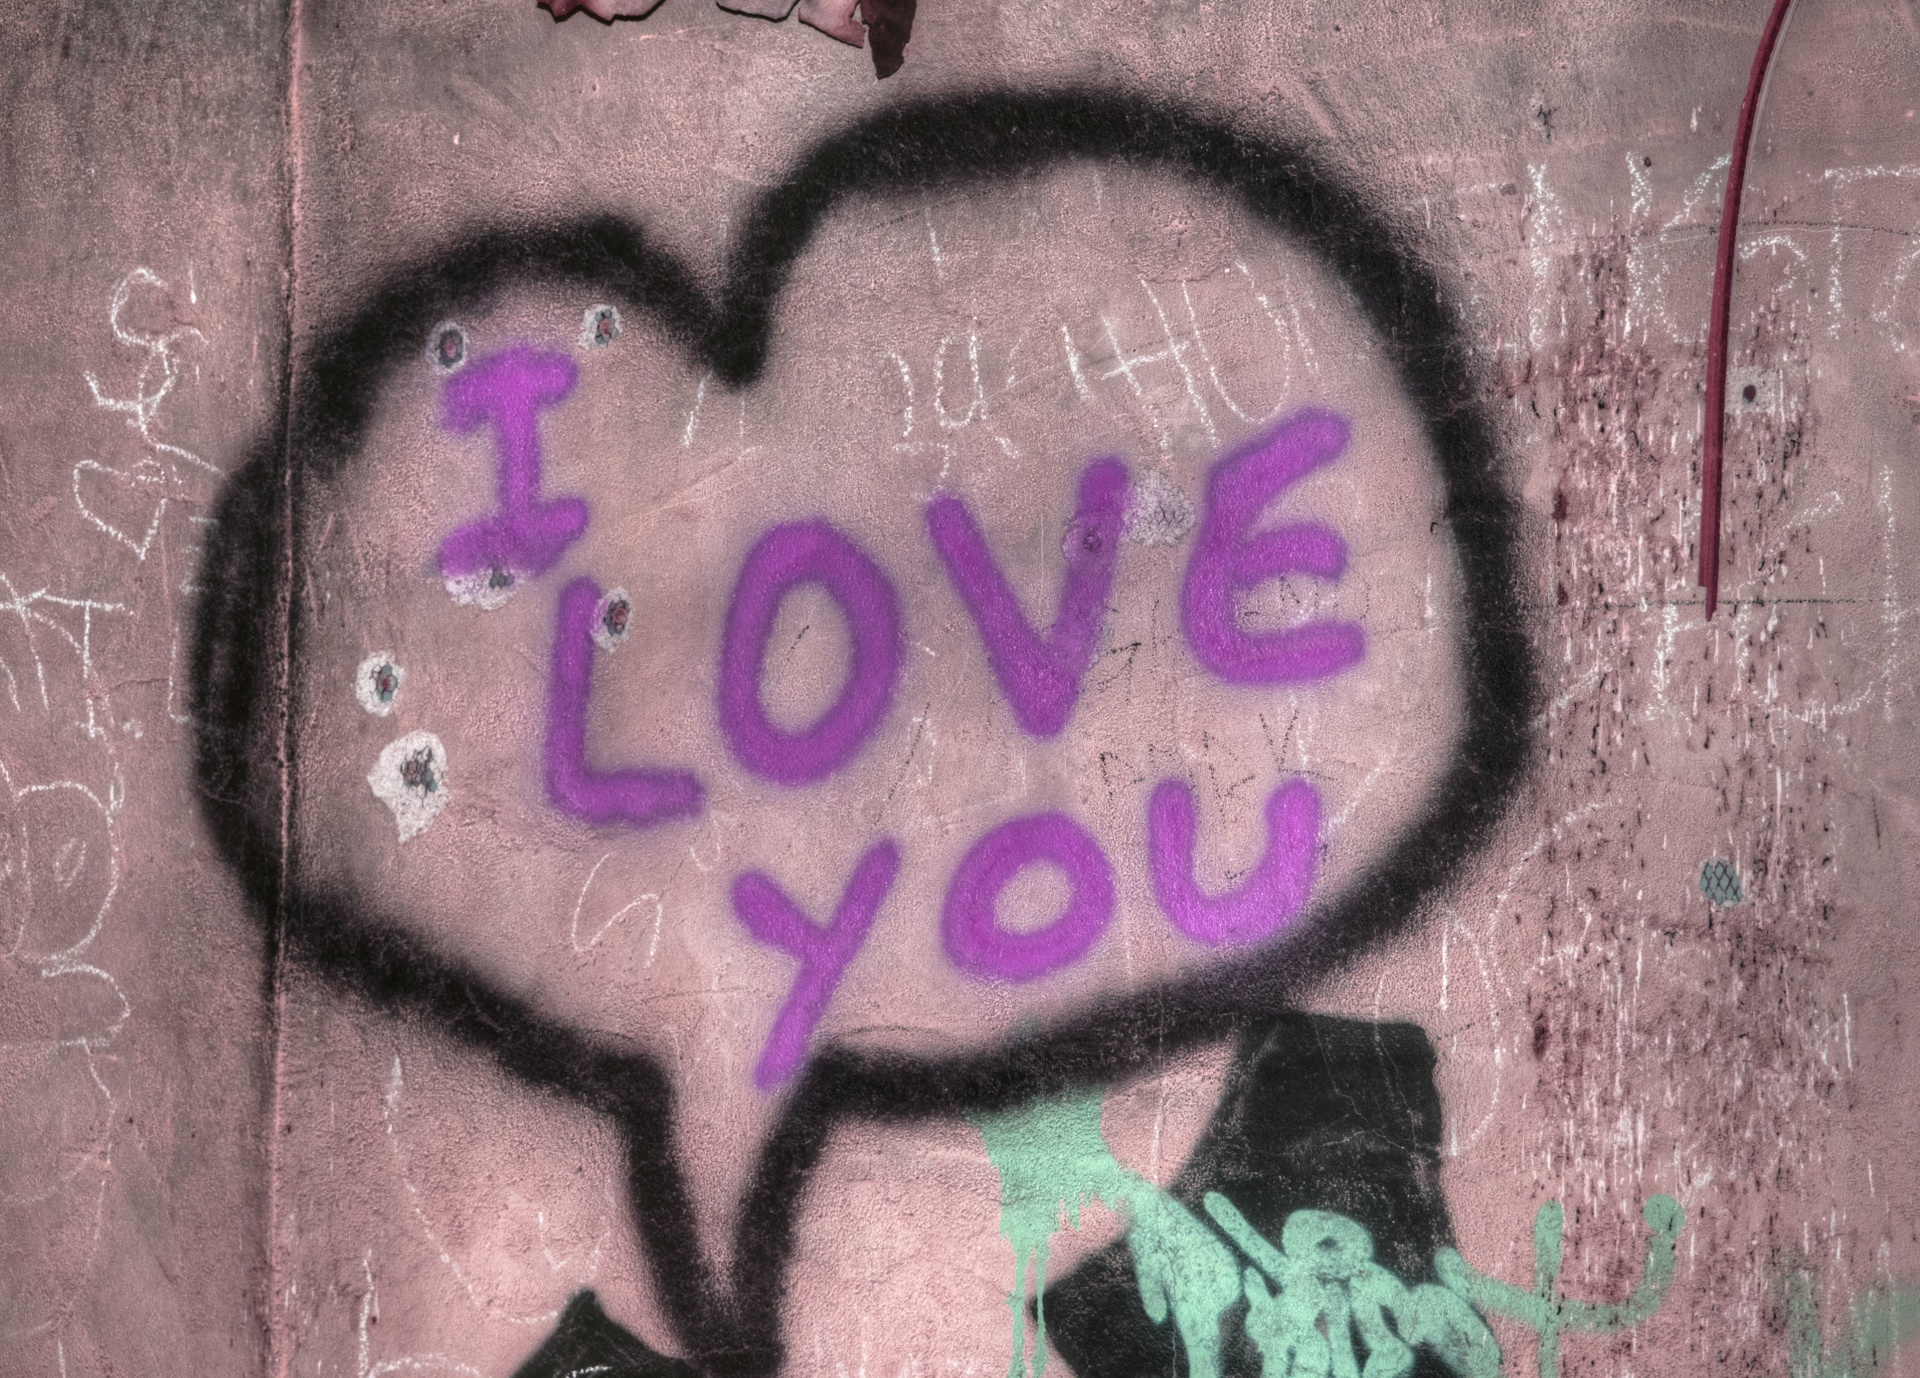 I Love You Graffiti